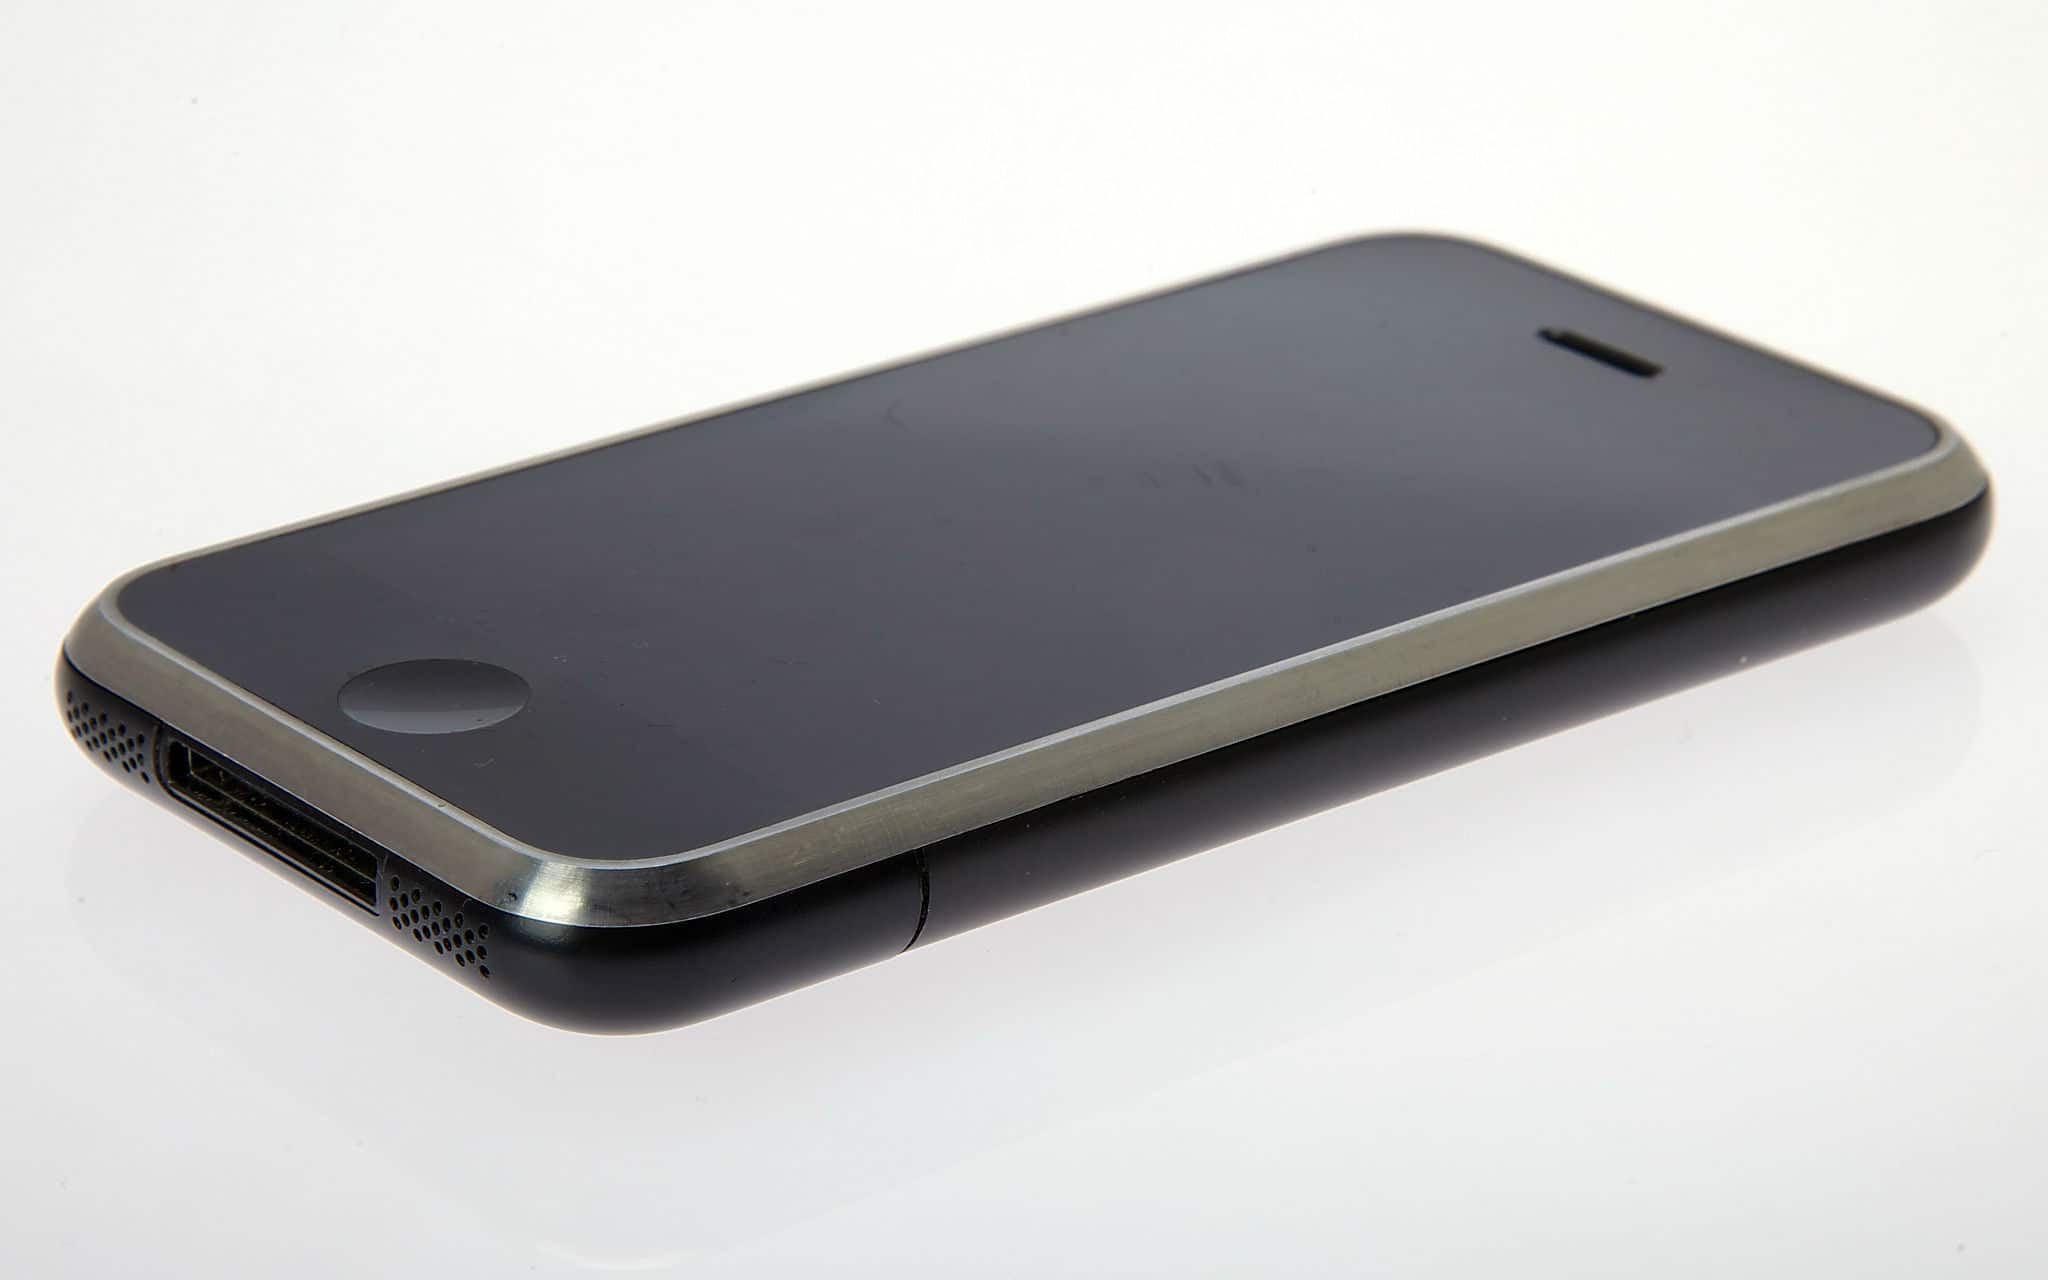 iPhone 2G prototype